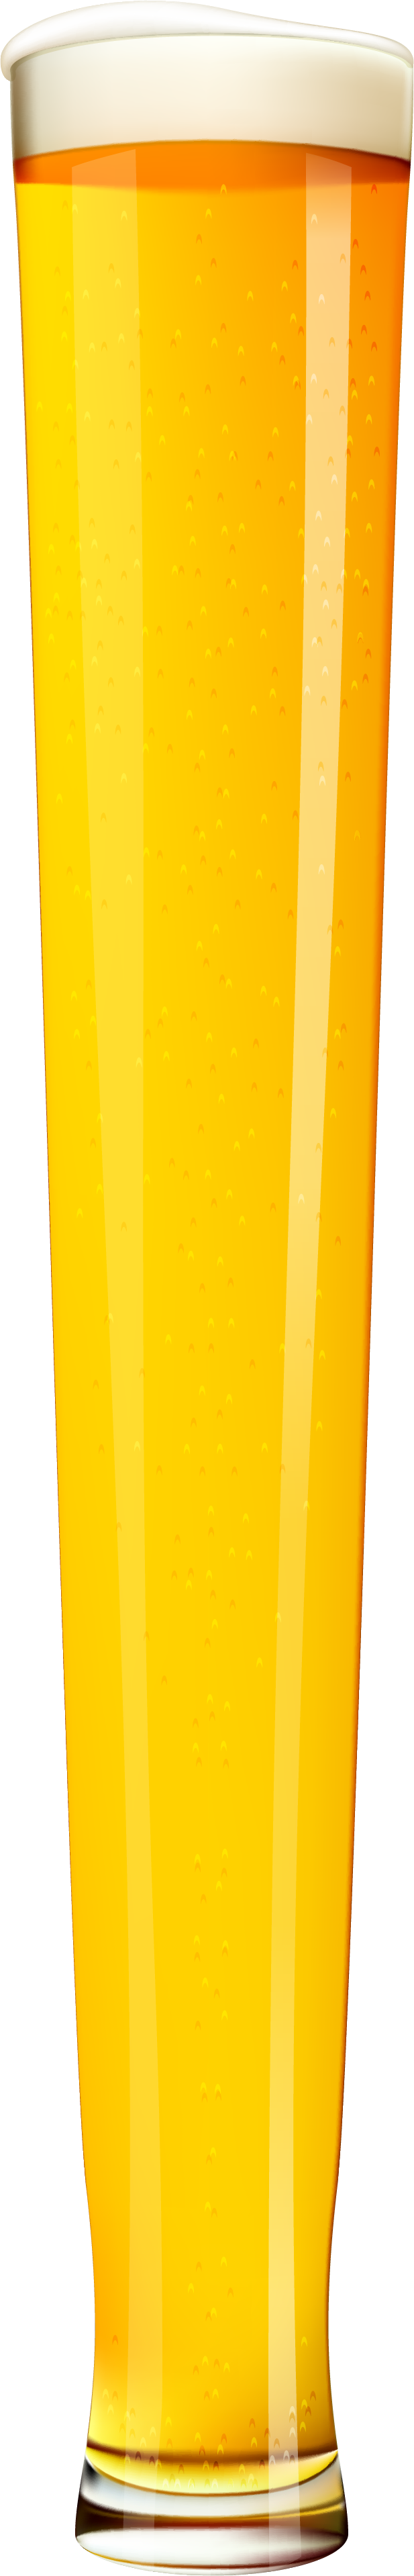 Tall bier